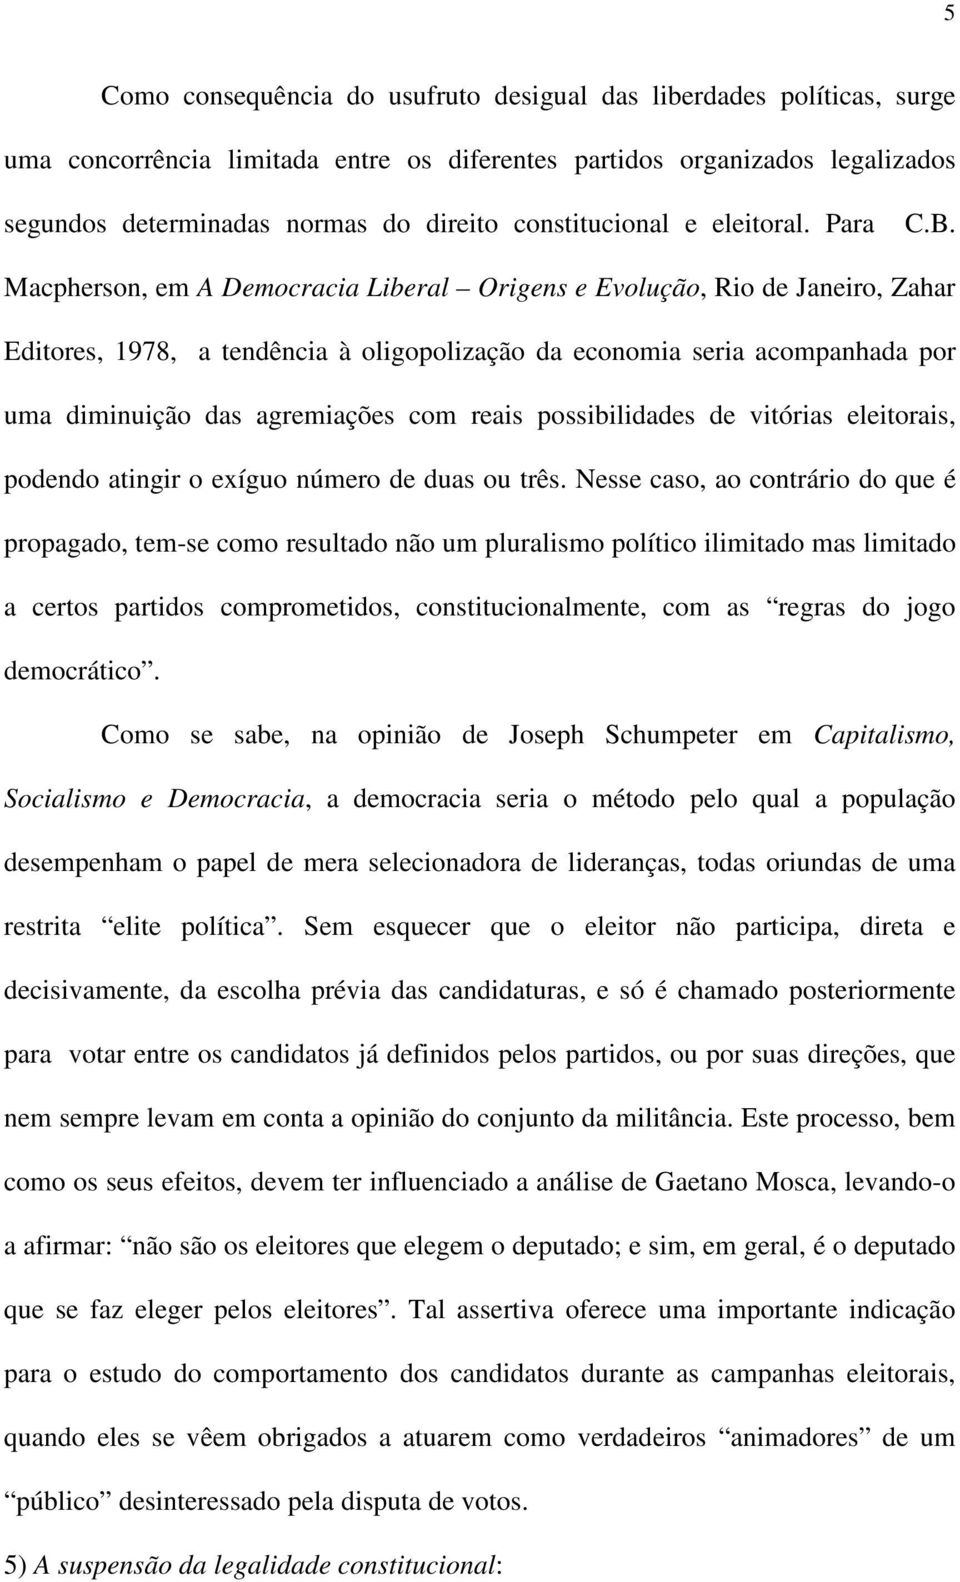 Macpherson, em A Democracia Liberal Origens e Evolução, Rio de Janeiro, Zahar Editores, 1978, a tendência à oligopolização da economia seria acompanhada por uma diminuição das agremiações com reais